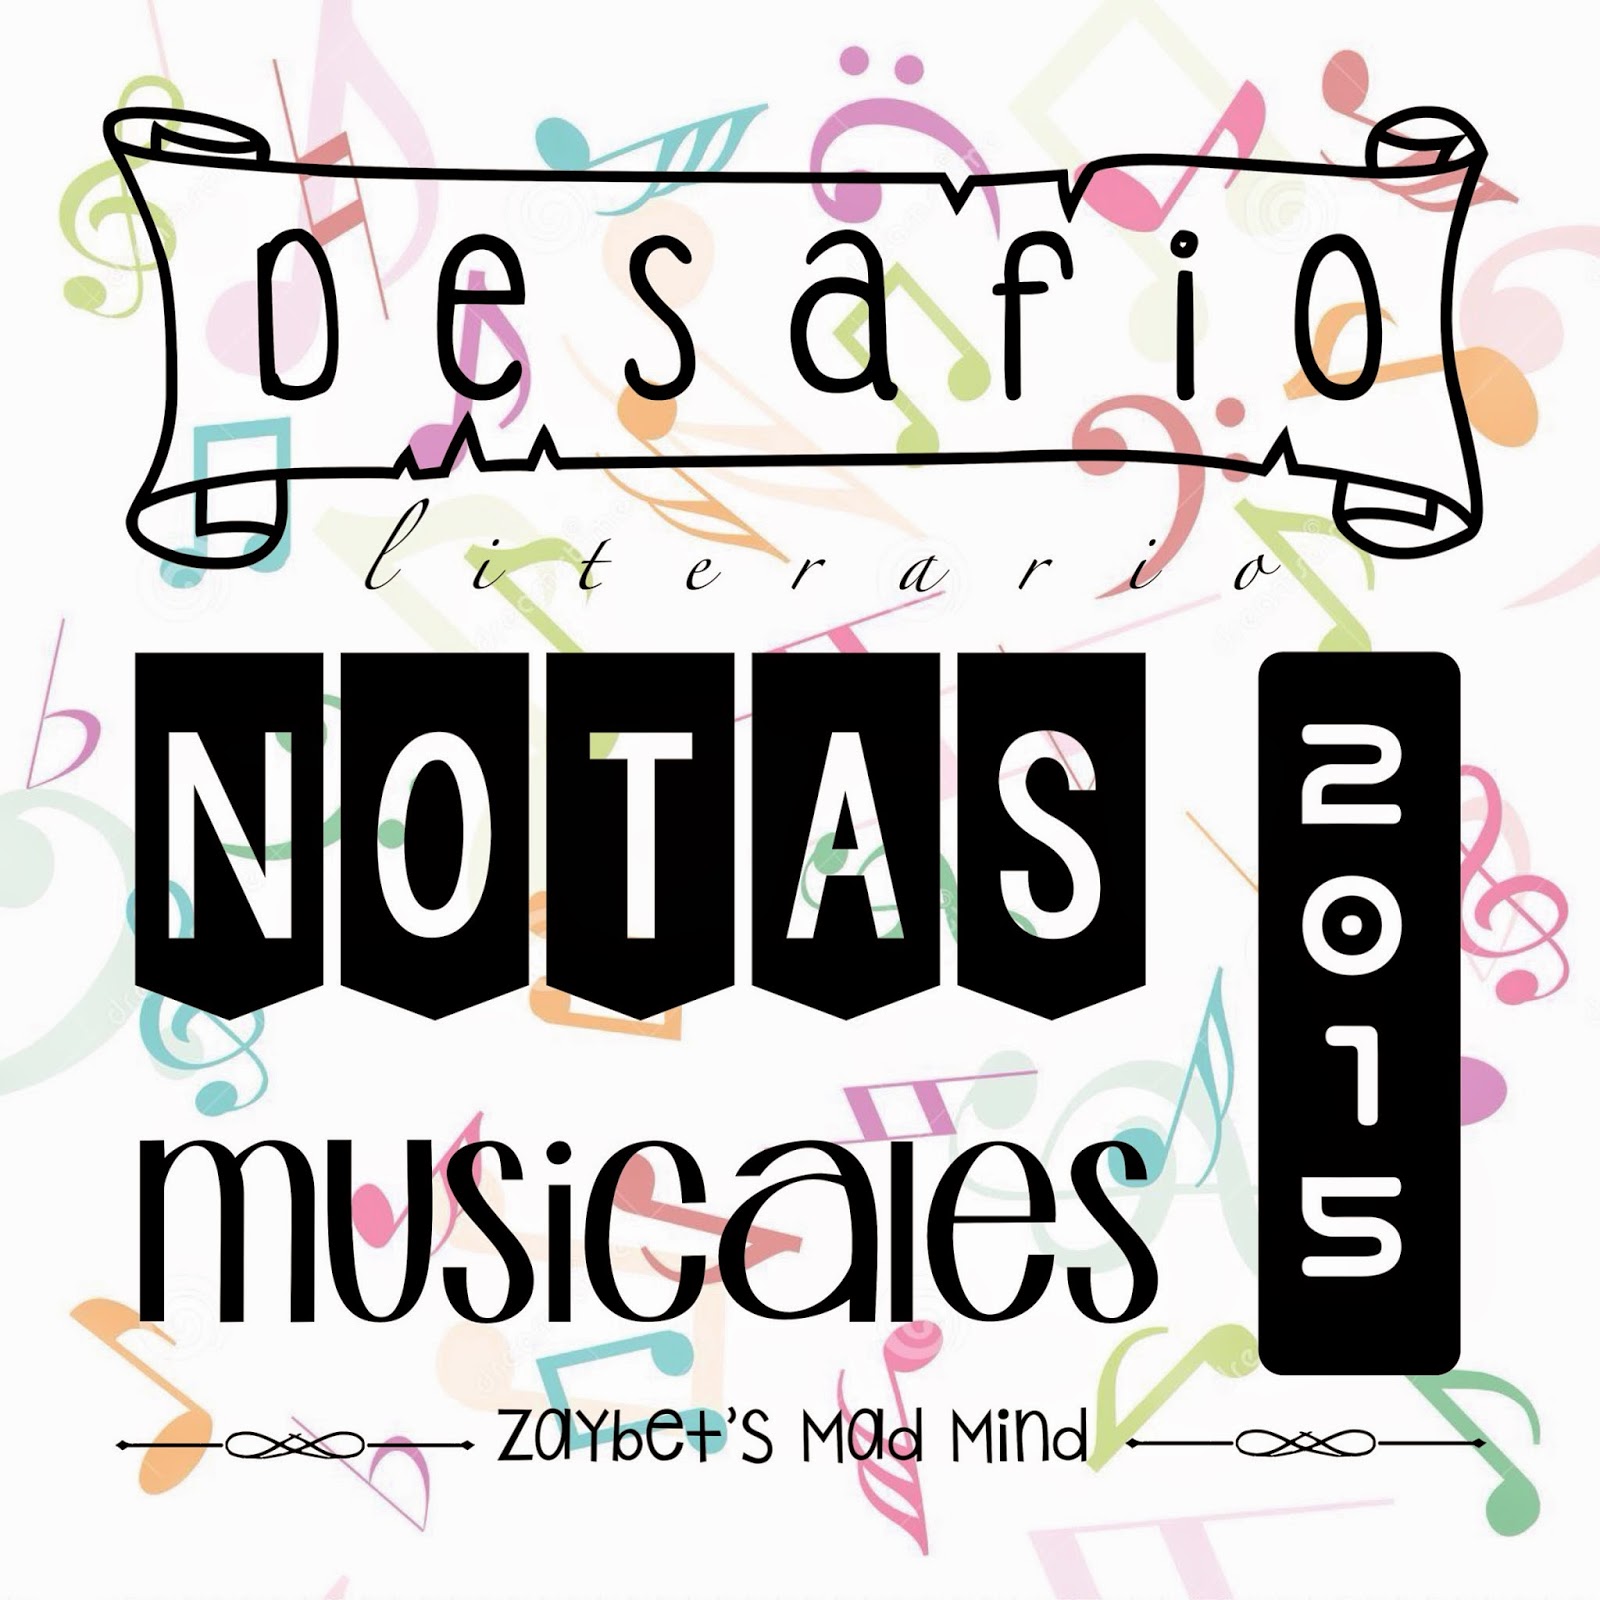 http://zaybet.blogspot.mx/2014/12/desafio-2015-notas-musicales-con-zsmm.html